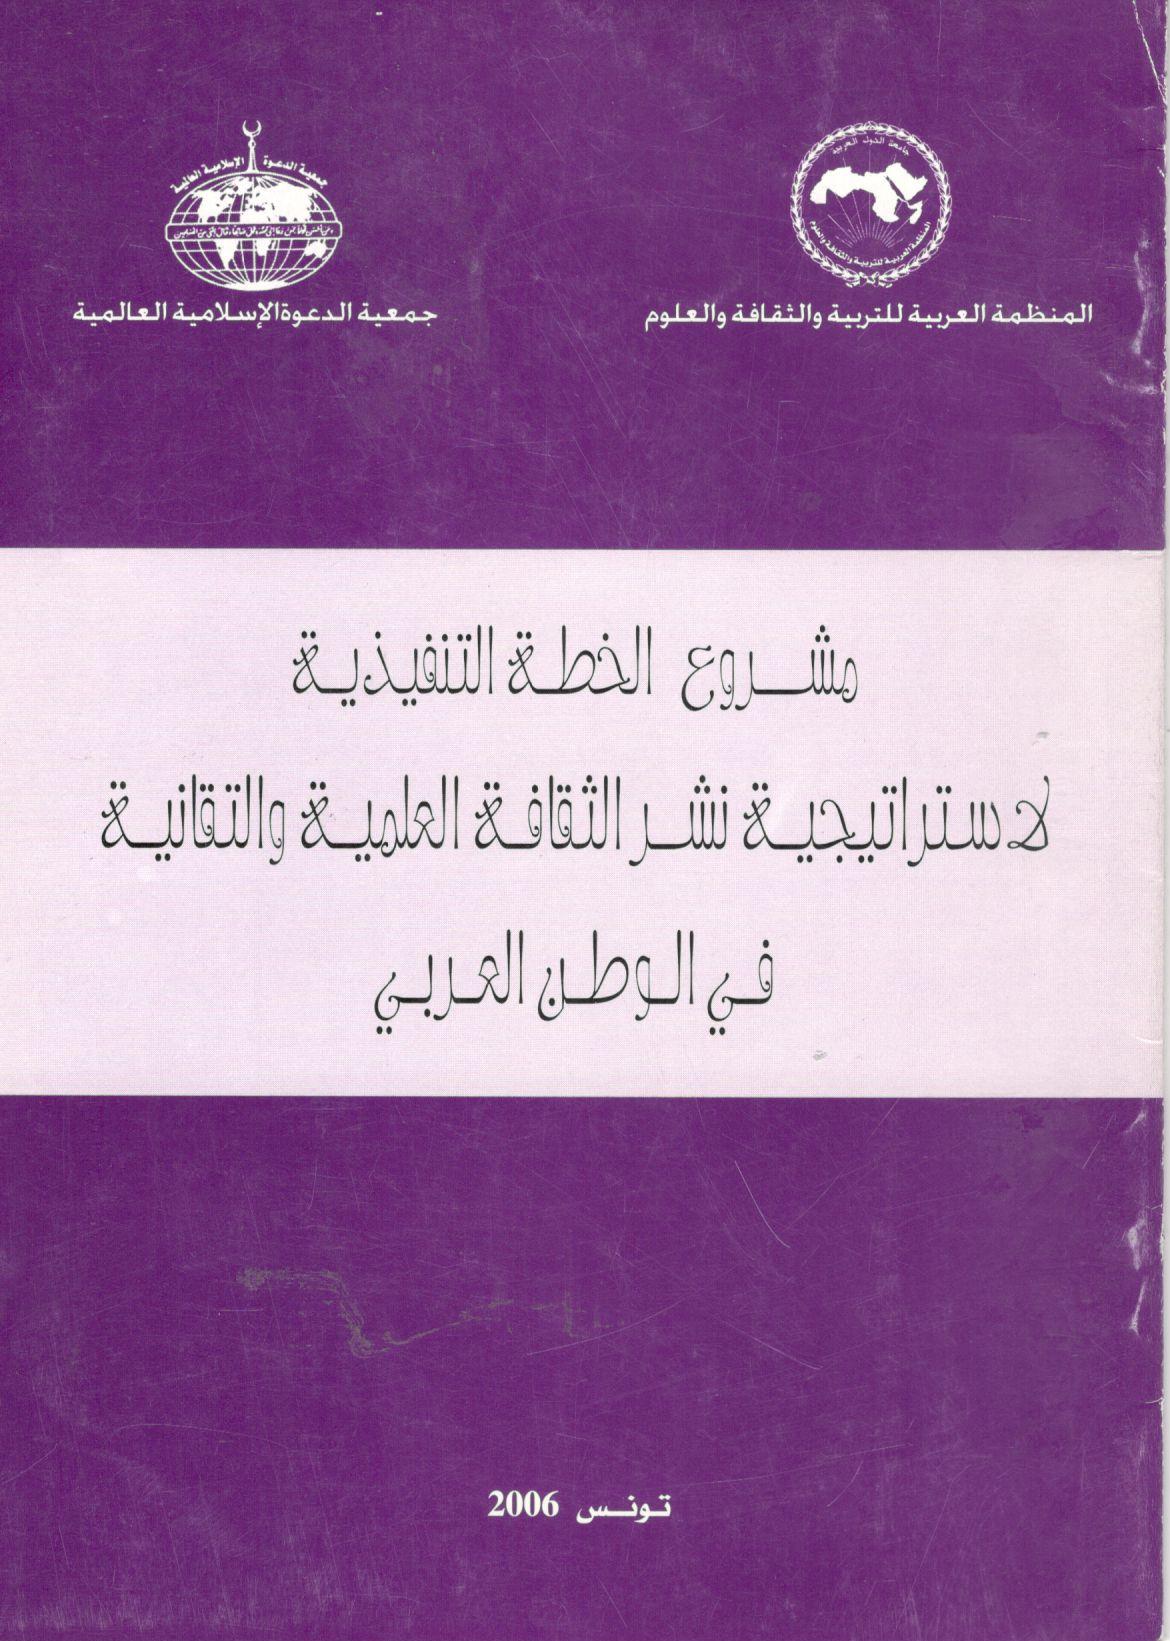 مشروع الخطة التنفيذية لاستراتيجية نشر الثقافة العلمية والتقانية في الوطن العربي